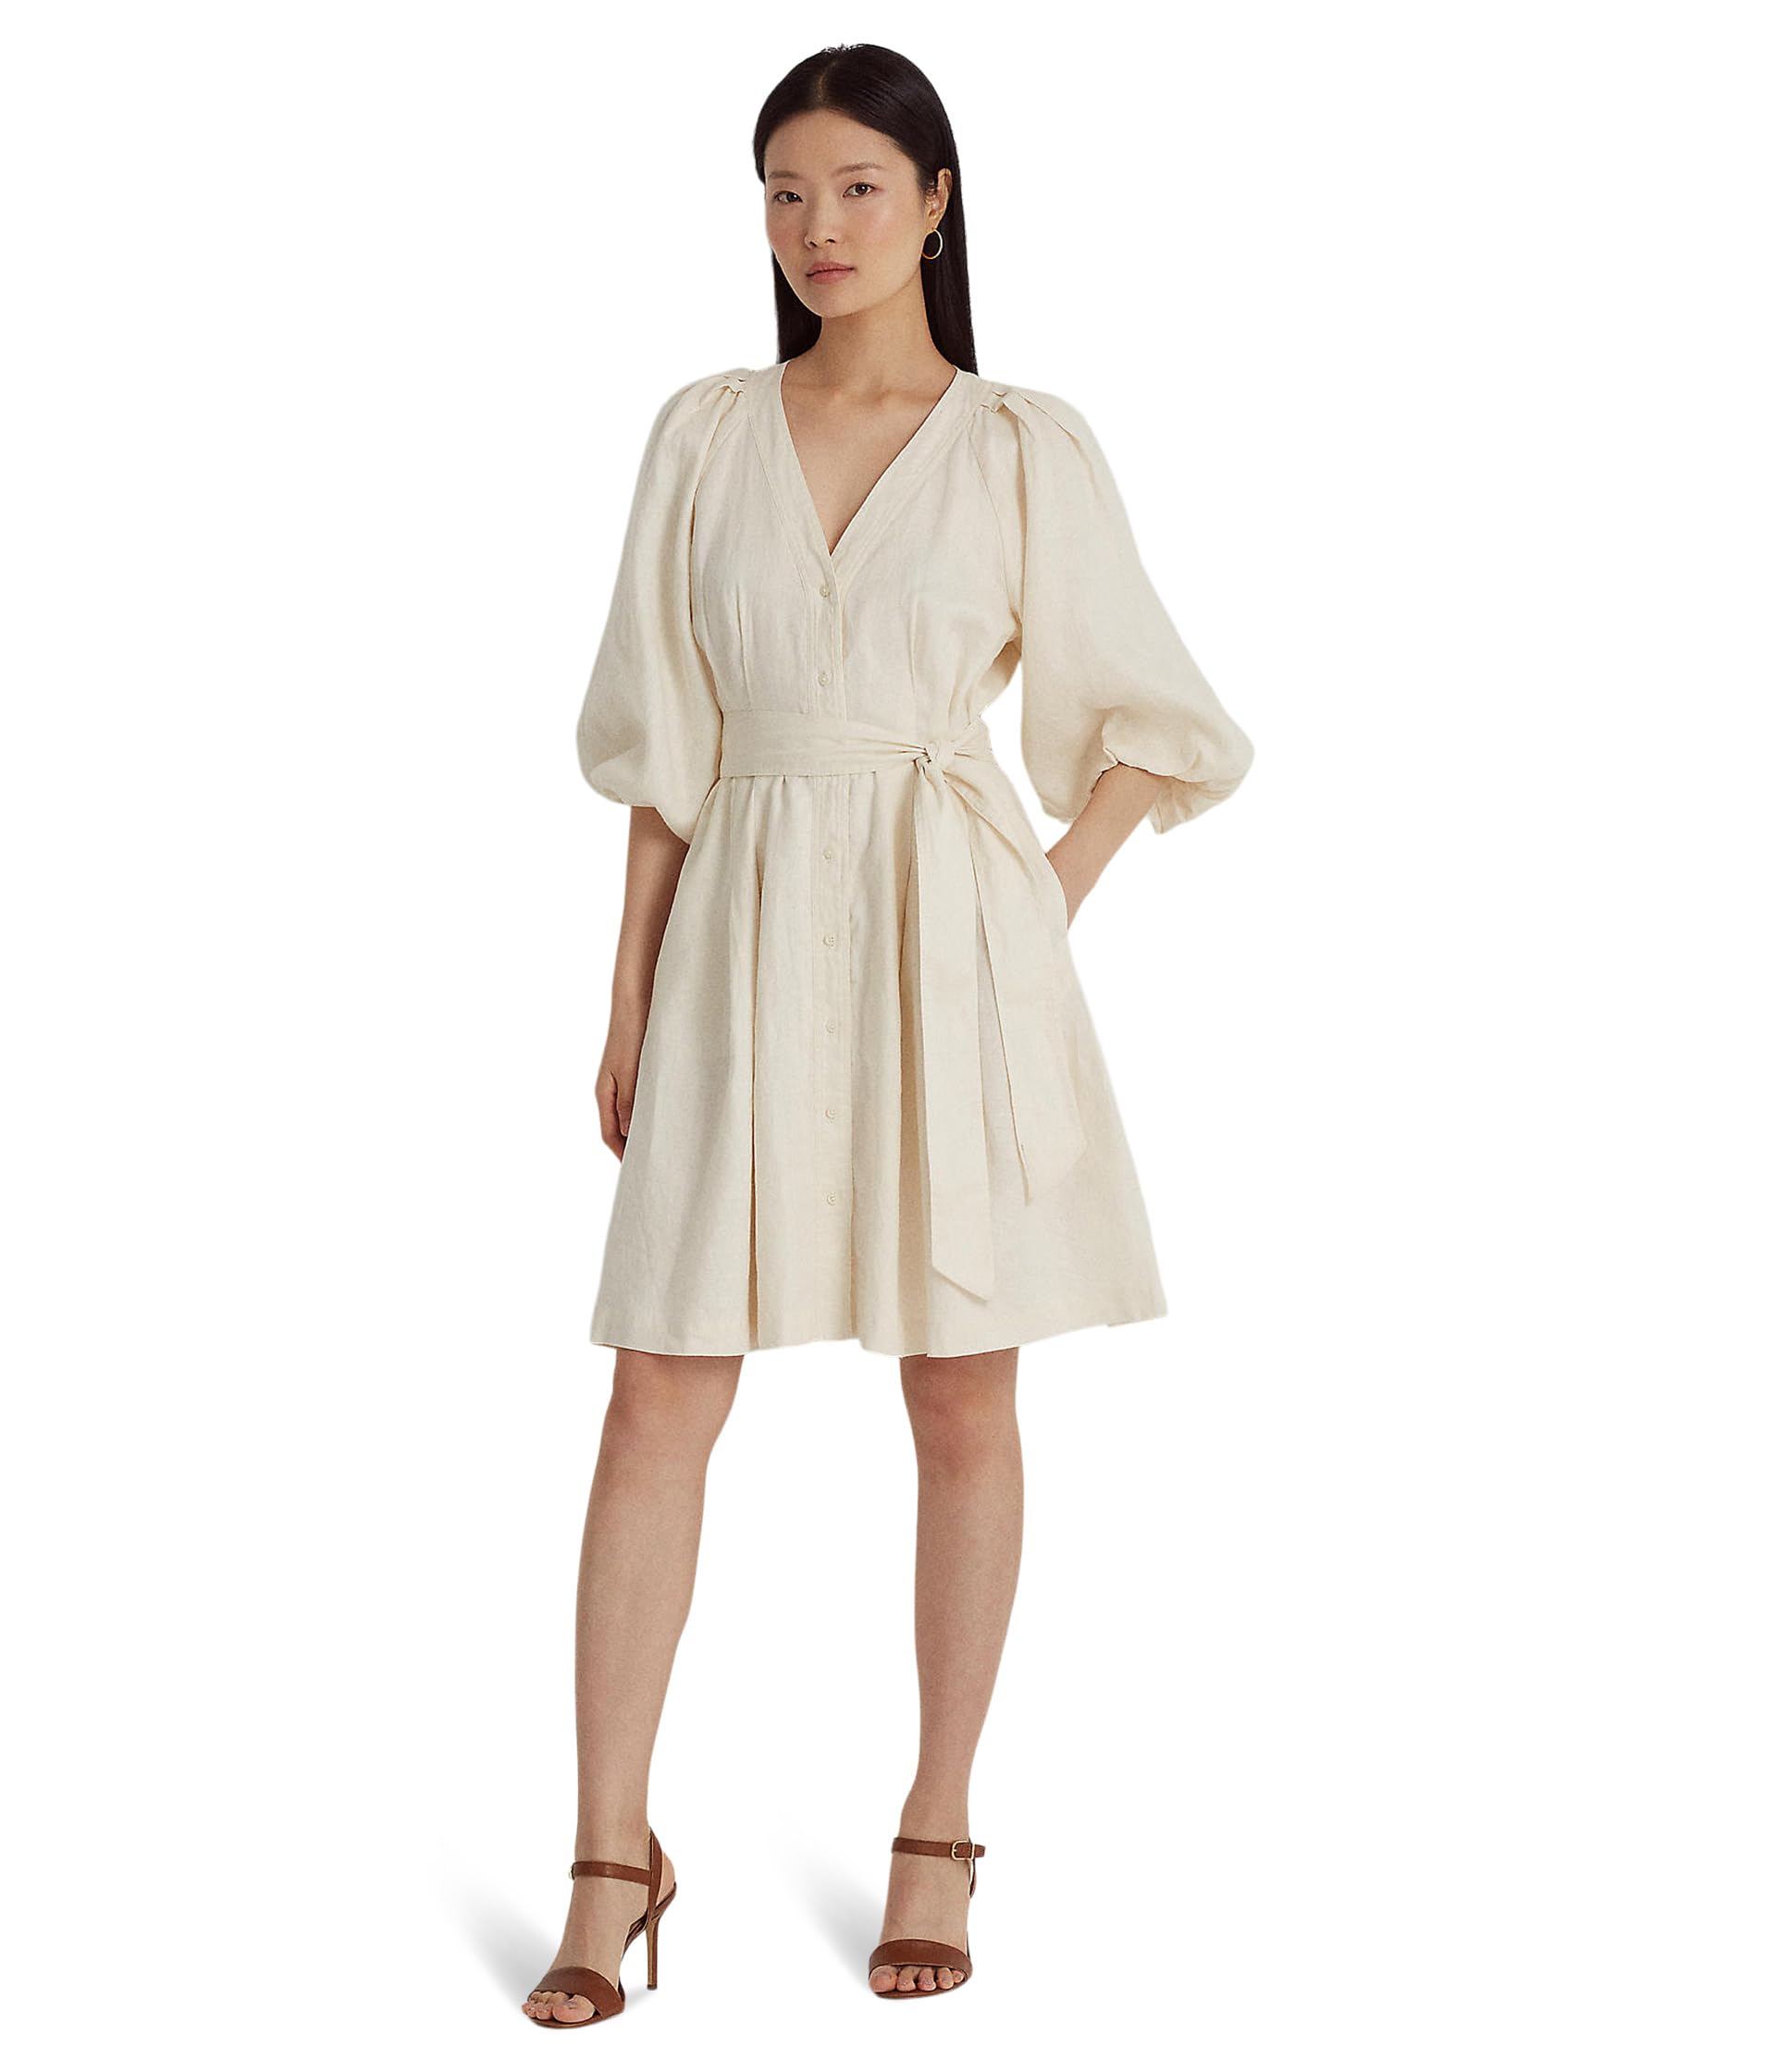 Belted Linen Bubble-Sleeve Dress LAUREN Ralph Lauren